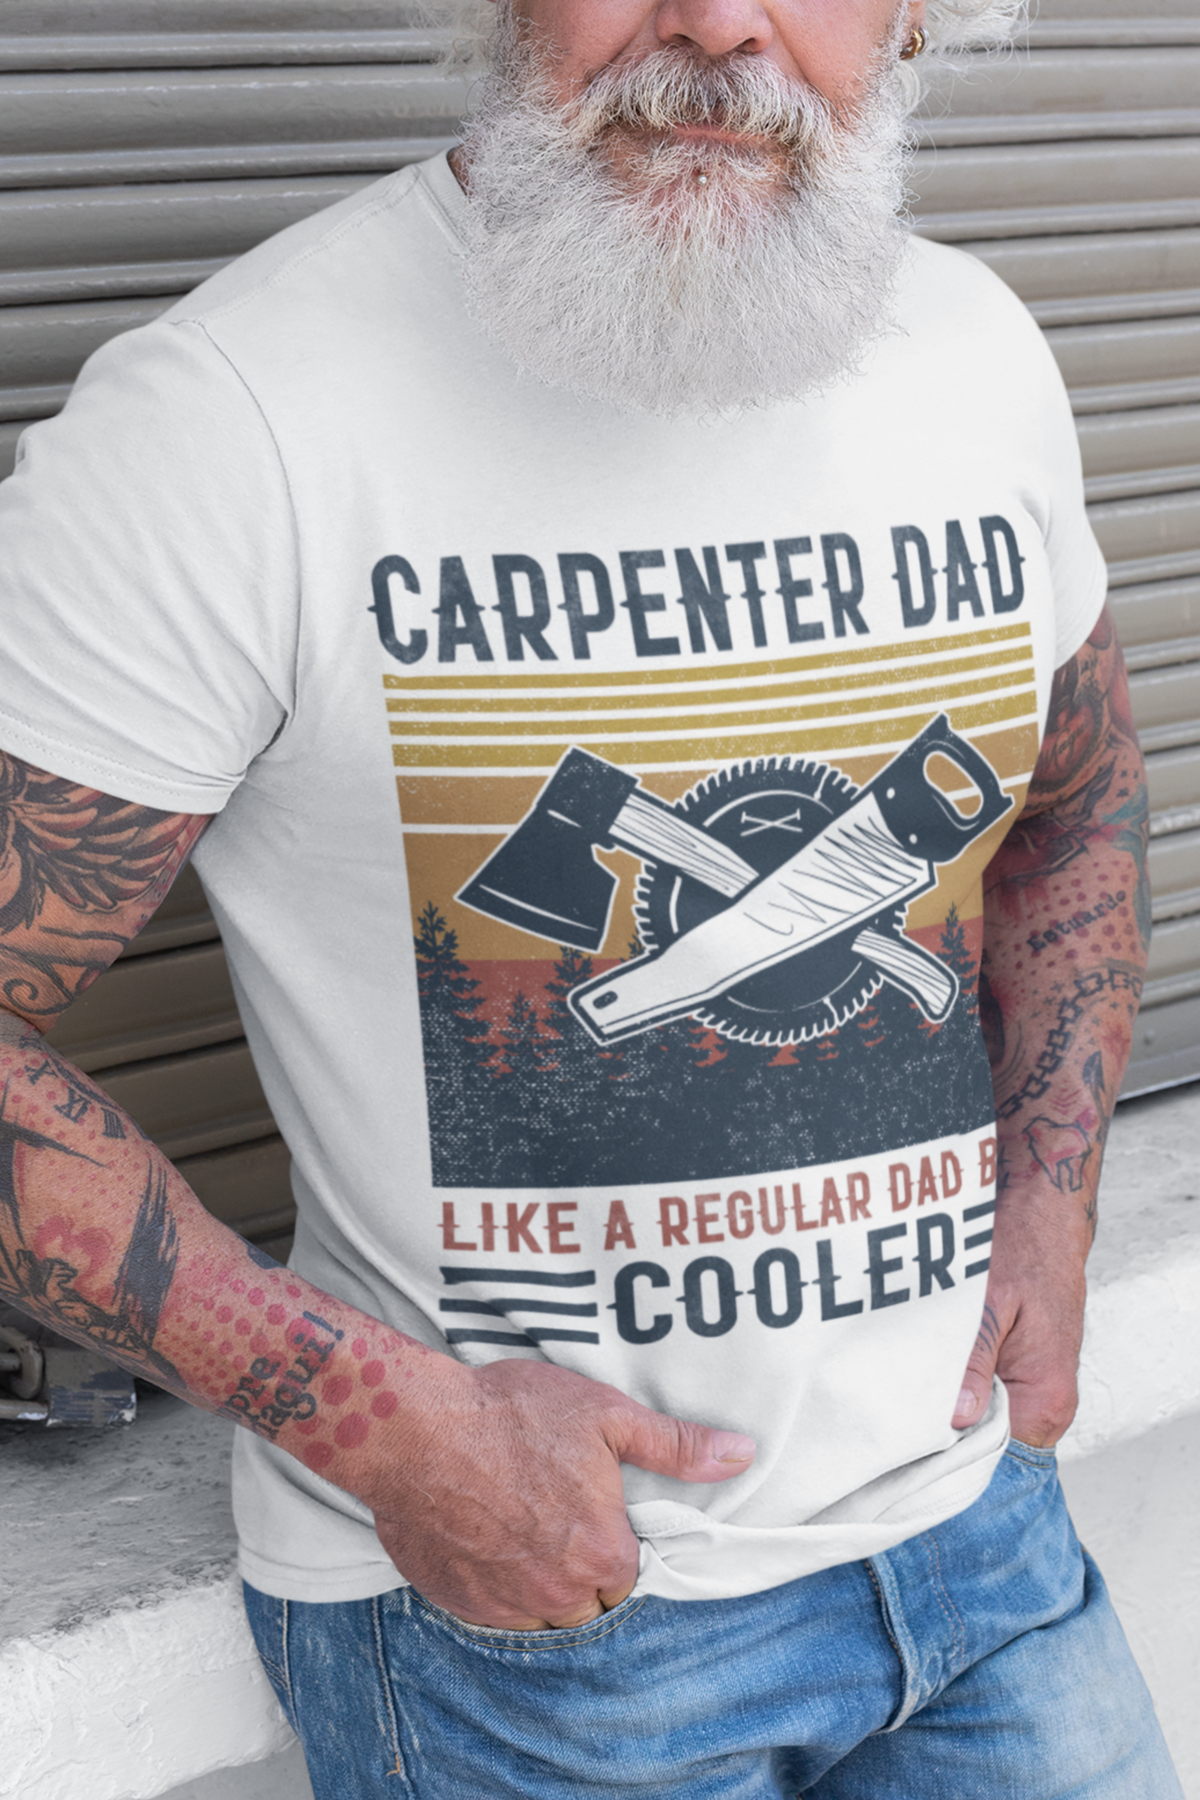 cooler T shirt carpentet for dad